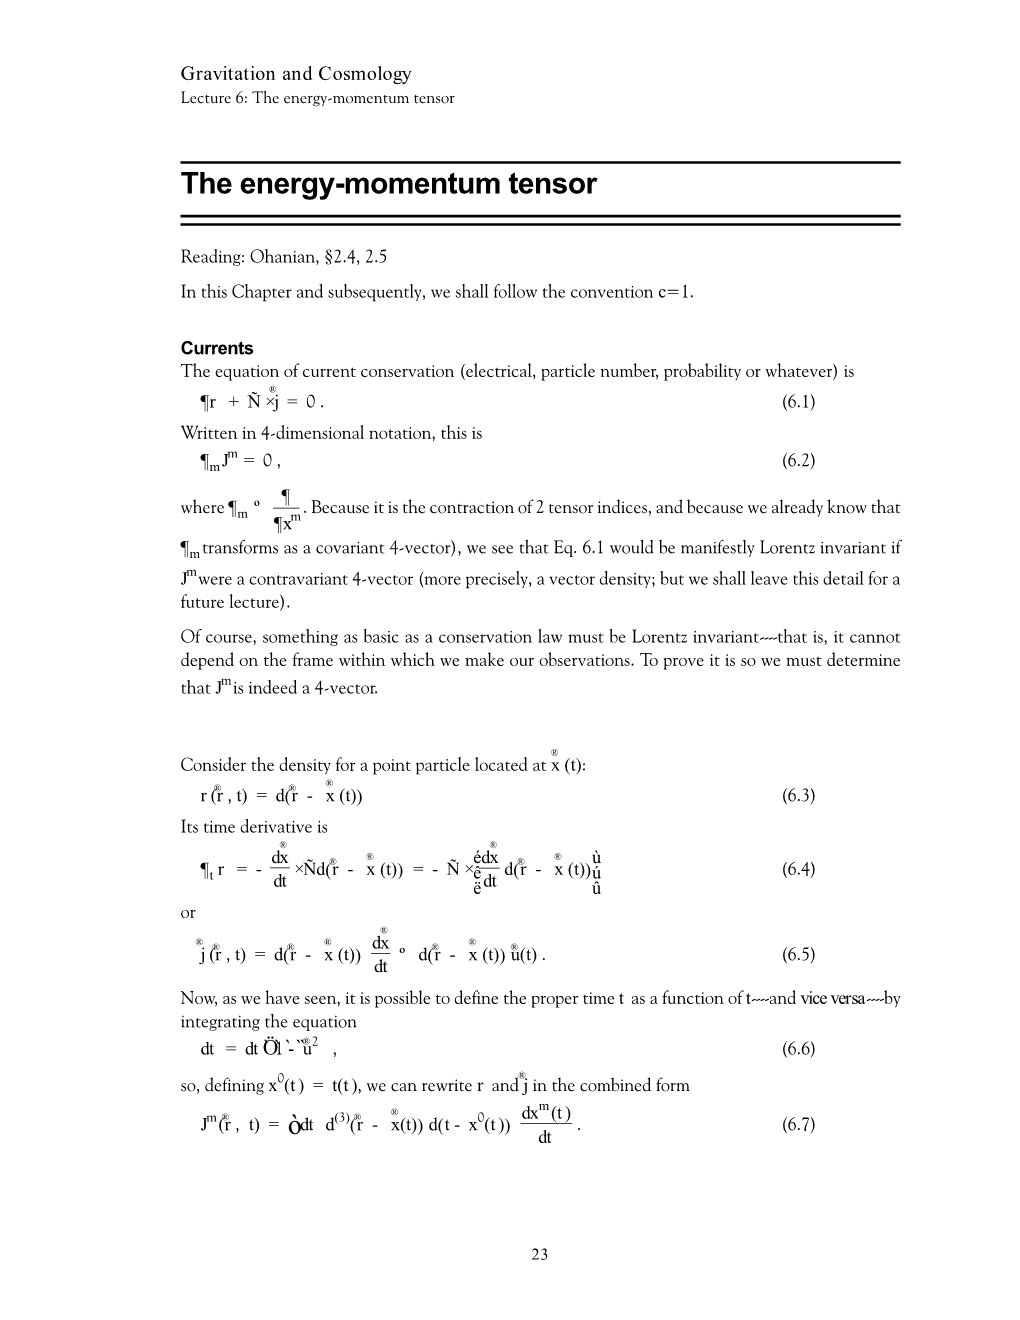 The Energy-Momentum Tensor